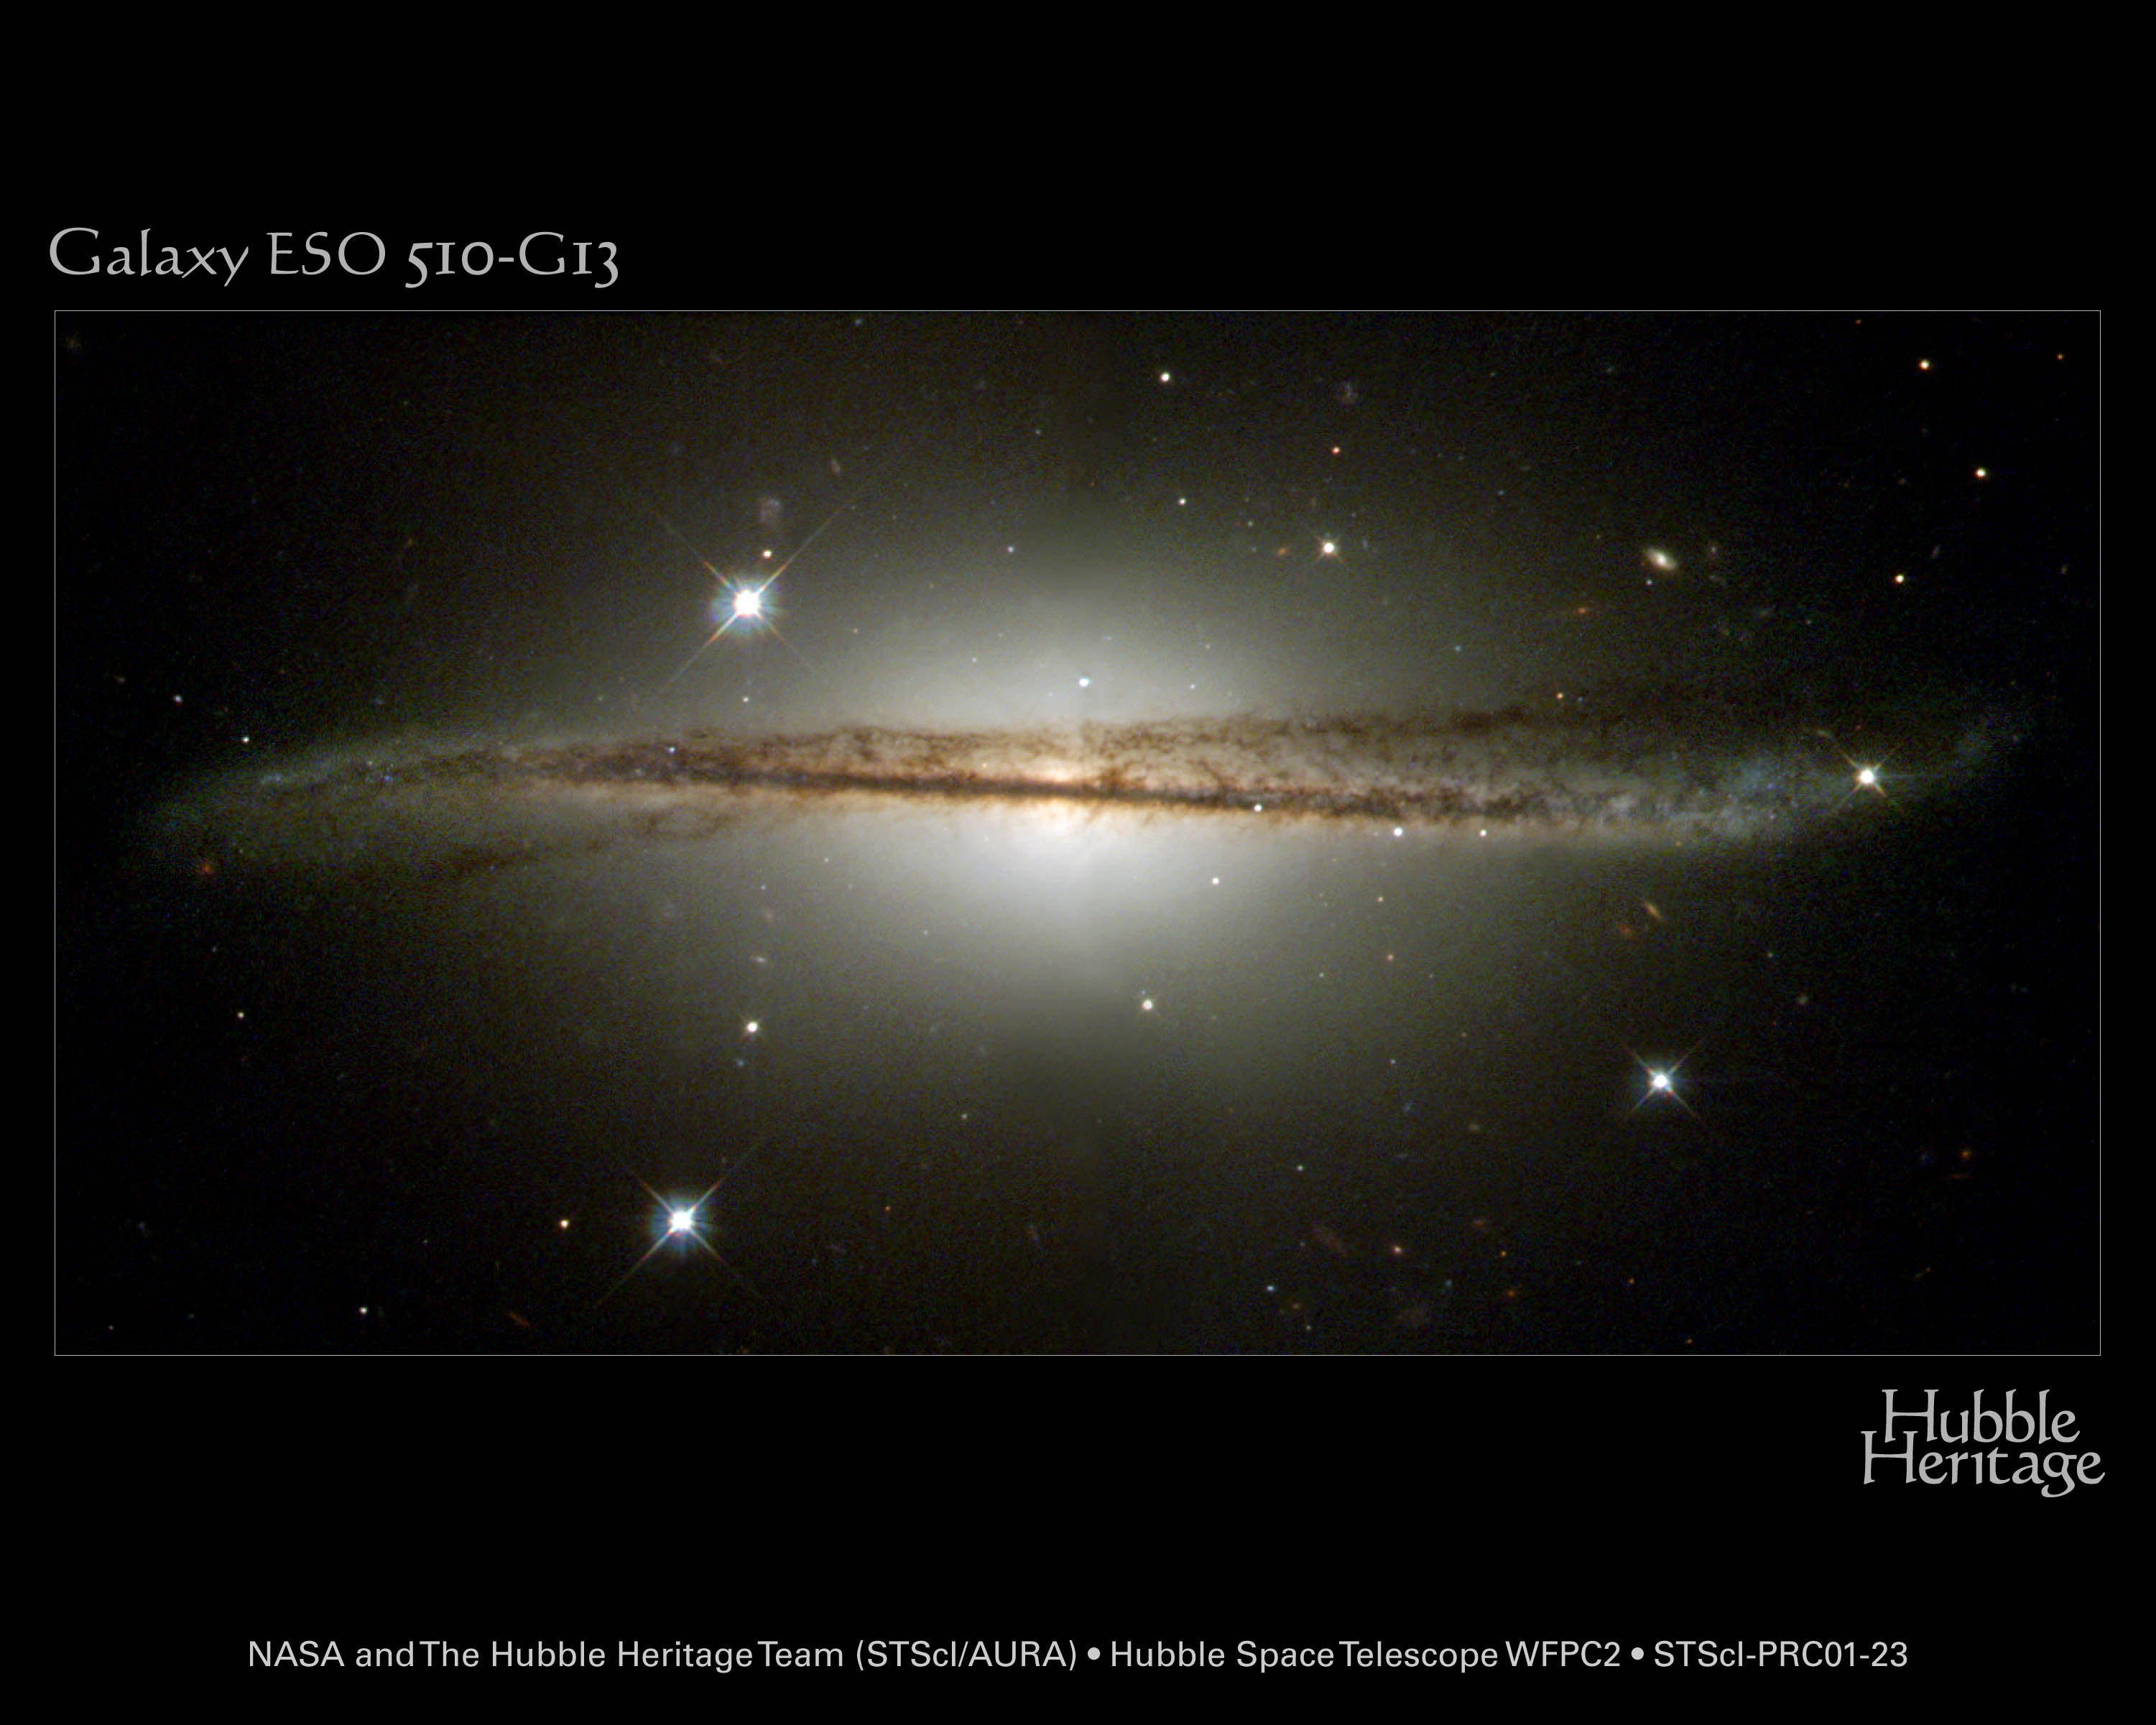    ESO 510 13